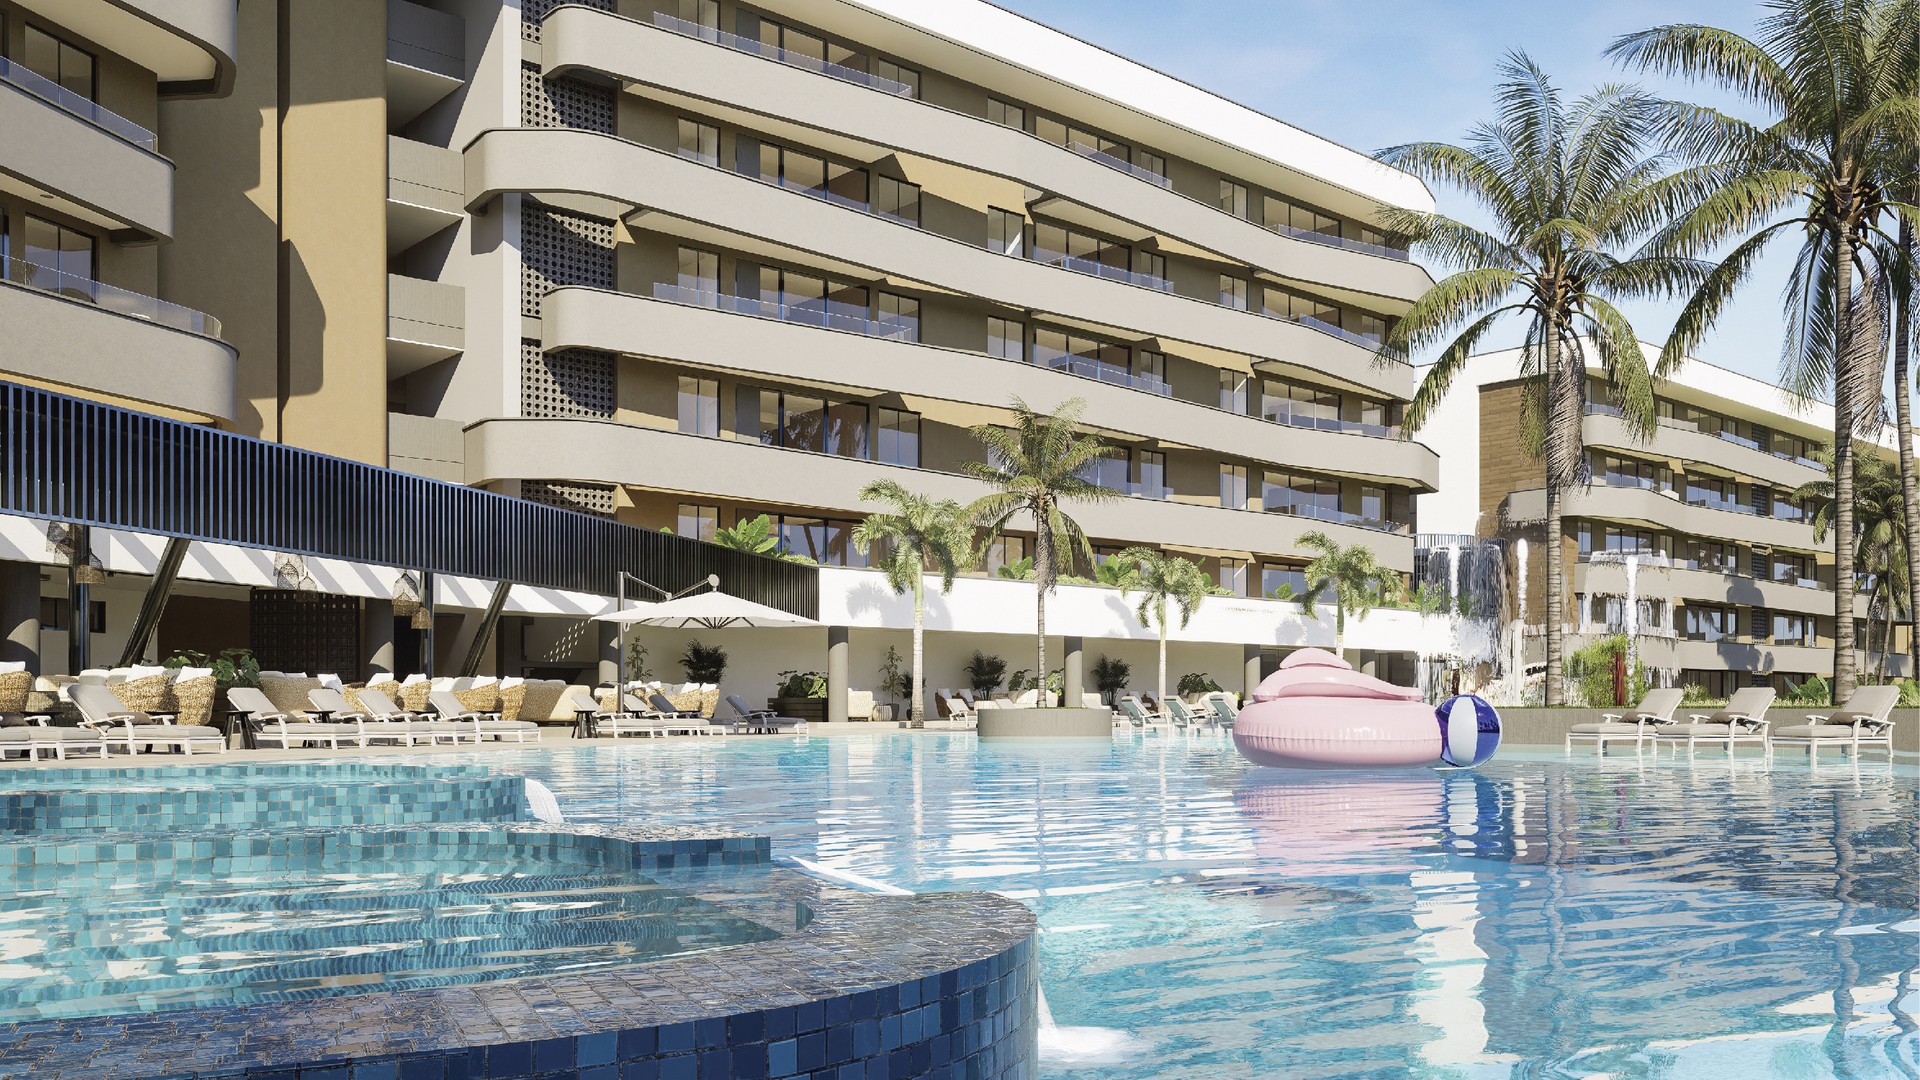 apartamentos - Venta de apartamentos en bávaro Punta cana con Club de Playa y campo de golf.